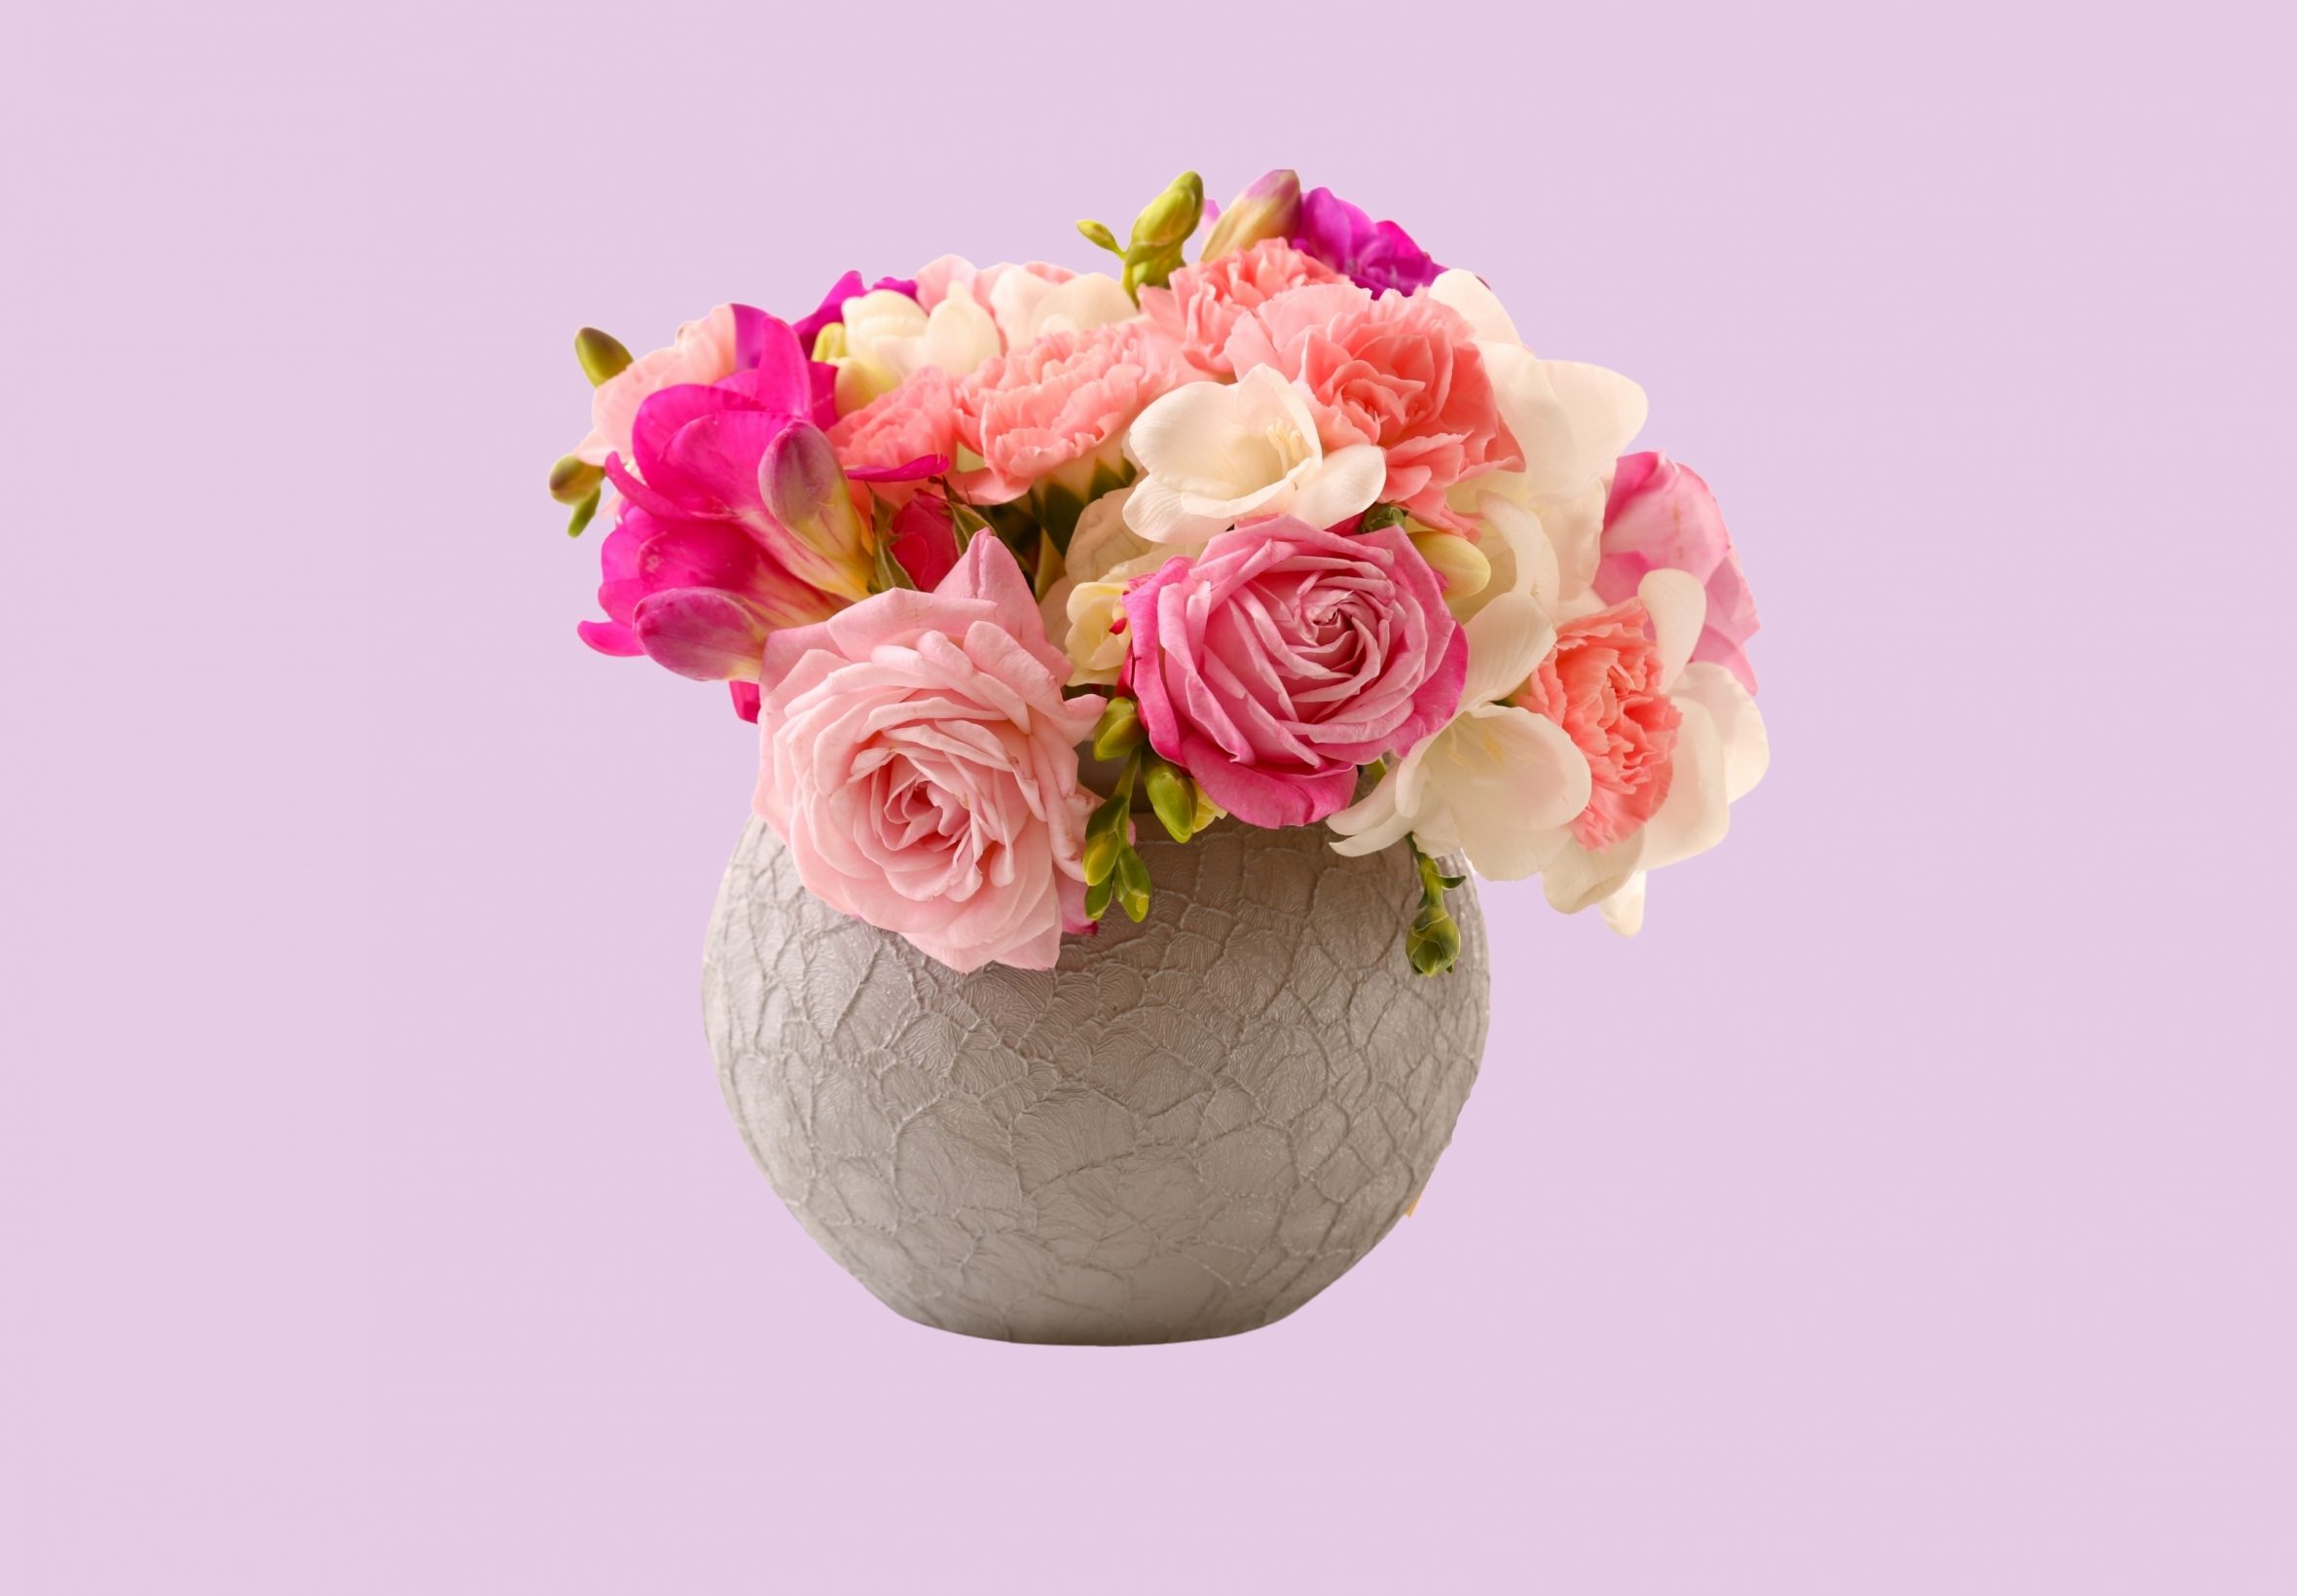 2360x1640 iPad Air wallpaper 4k Vase Pink Roses Floral Pot iPad Wallpaper 2360x1640 pixels resolution